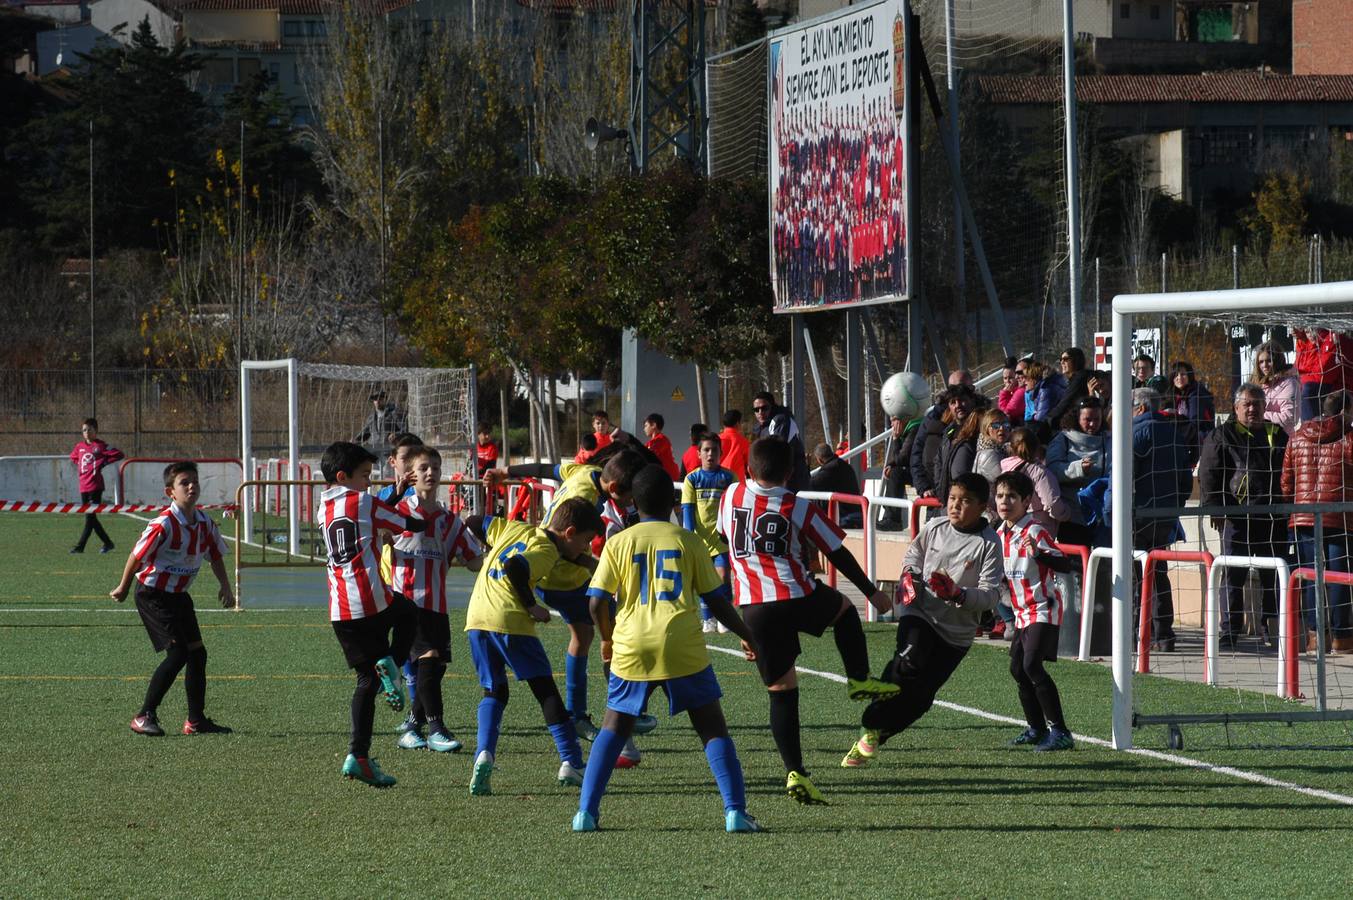 XXI torneo de fútbol base Villa de Autol que ha comenzado este jueves y durará hasta el domingo. Participan 99 equipos, 1.300 chavales de 30 clubes de La Rioja y Navarra.